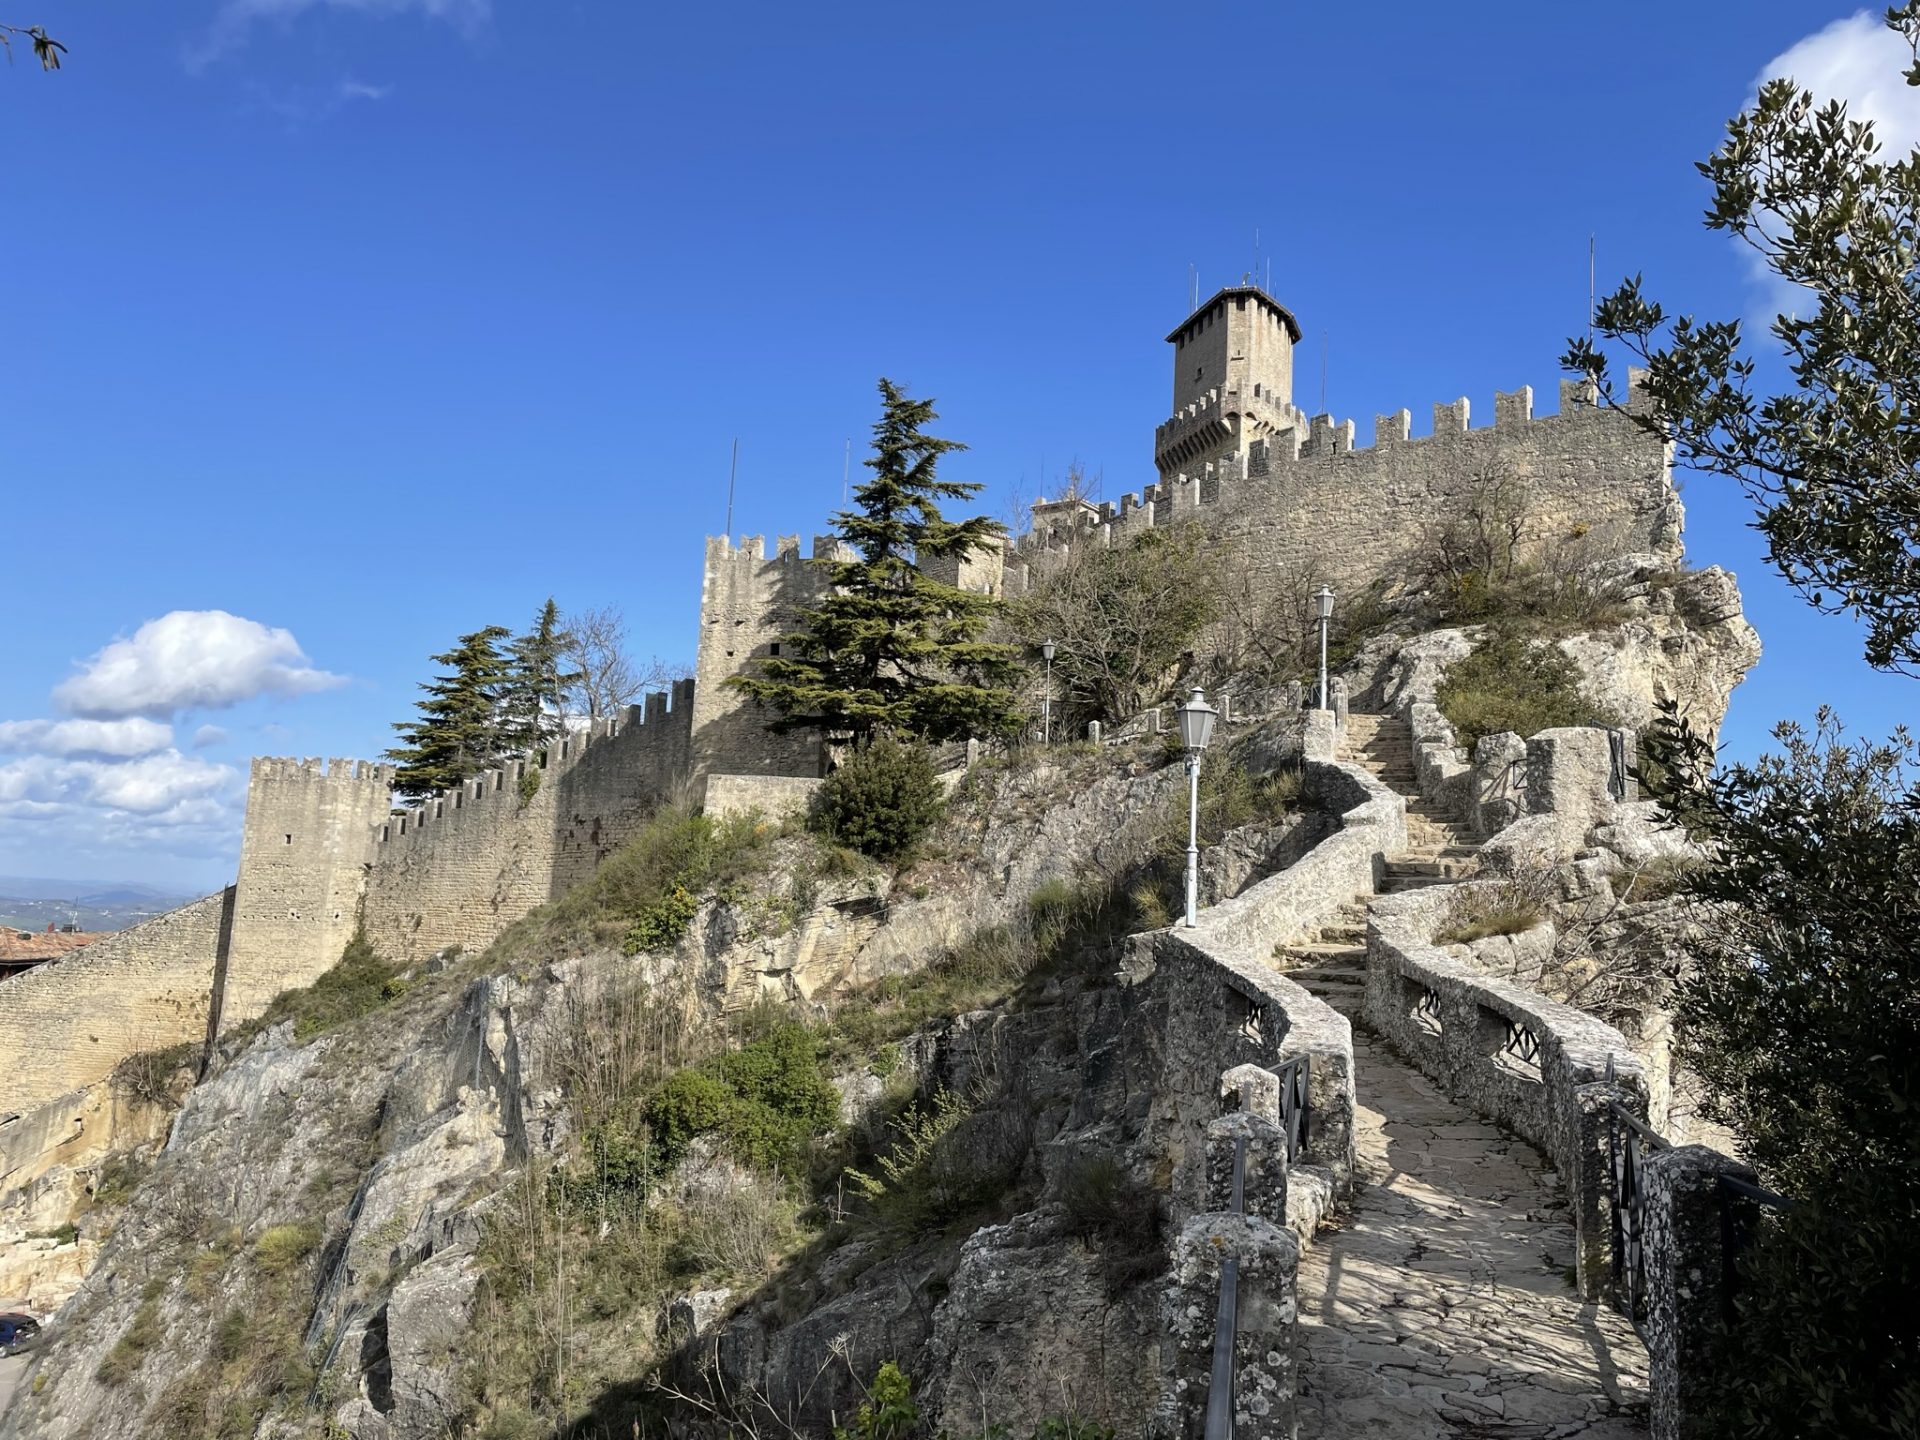 stolica San Marino, trzy wieże